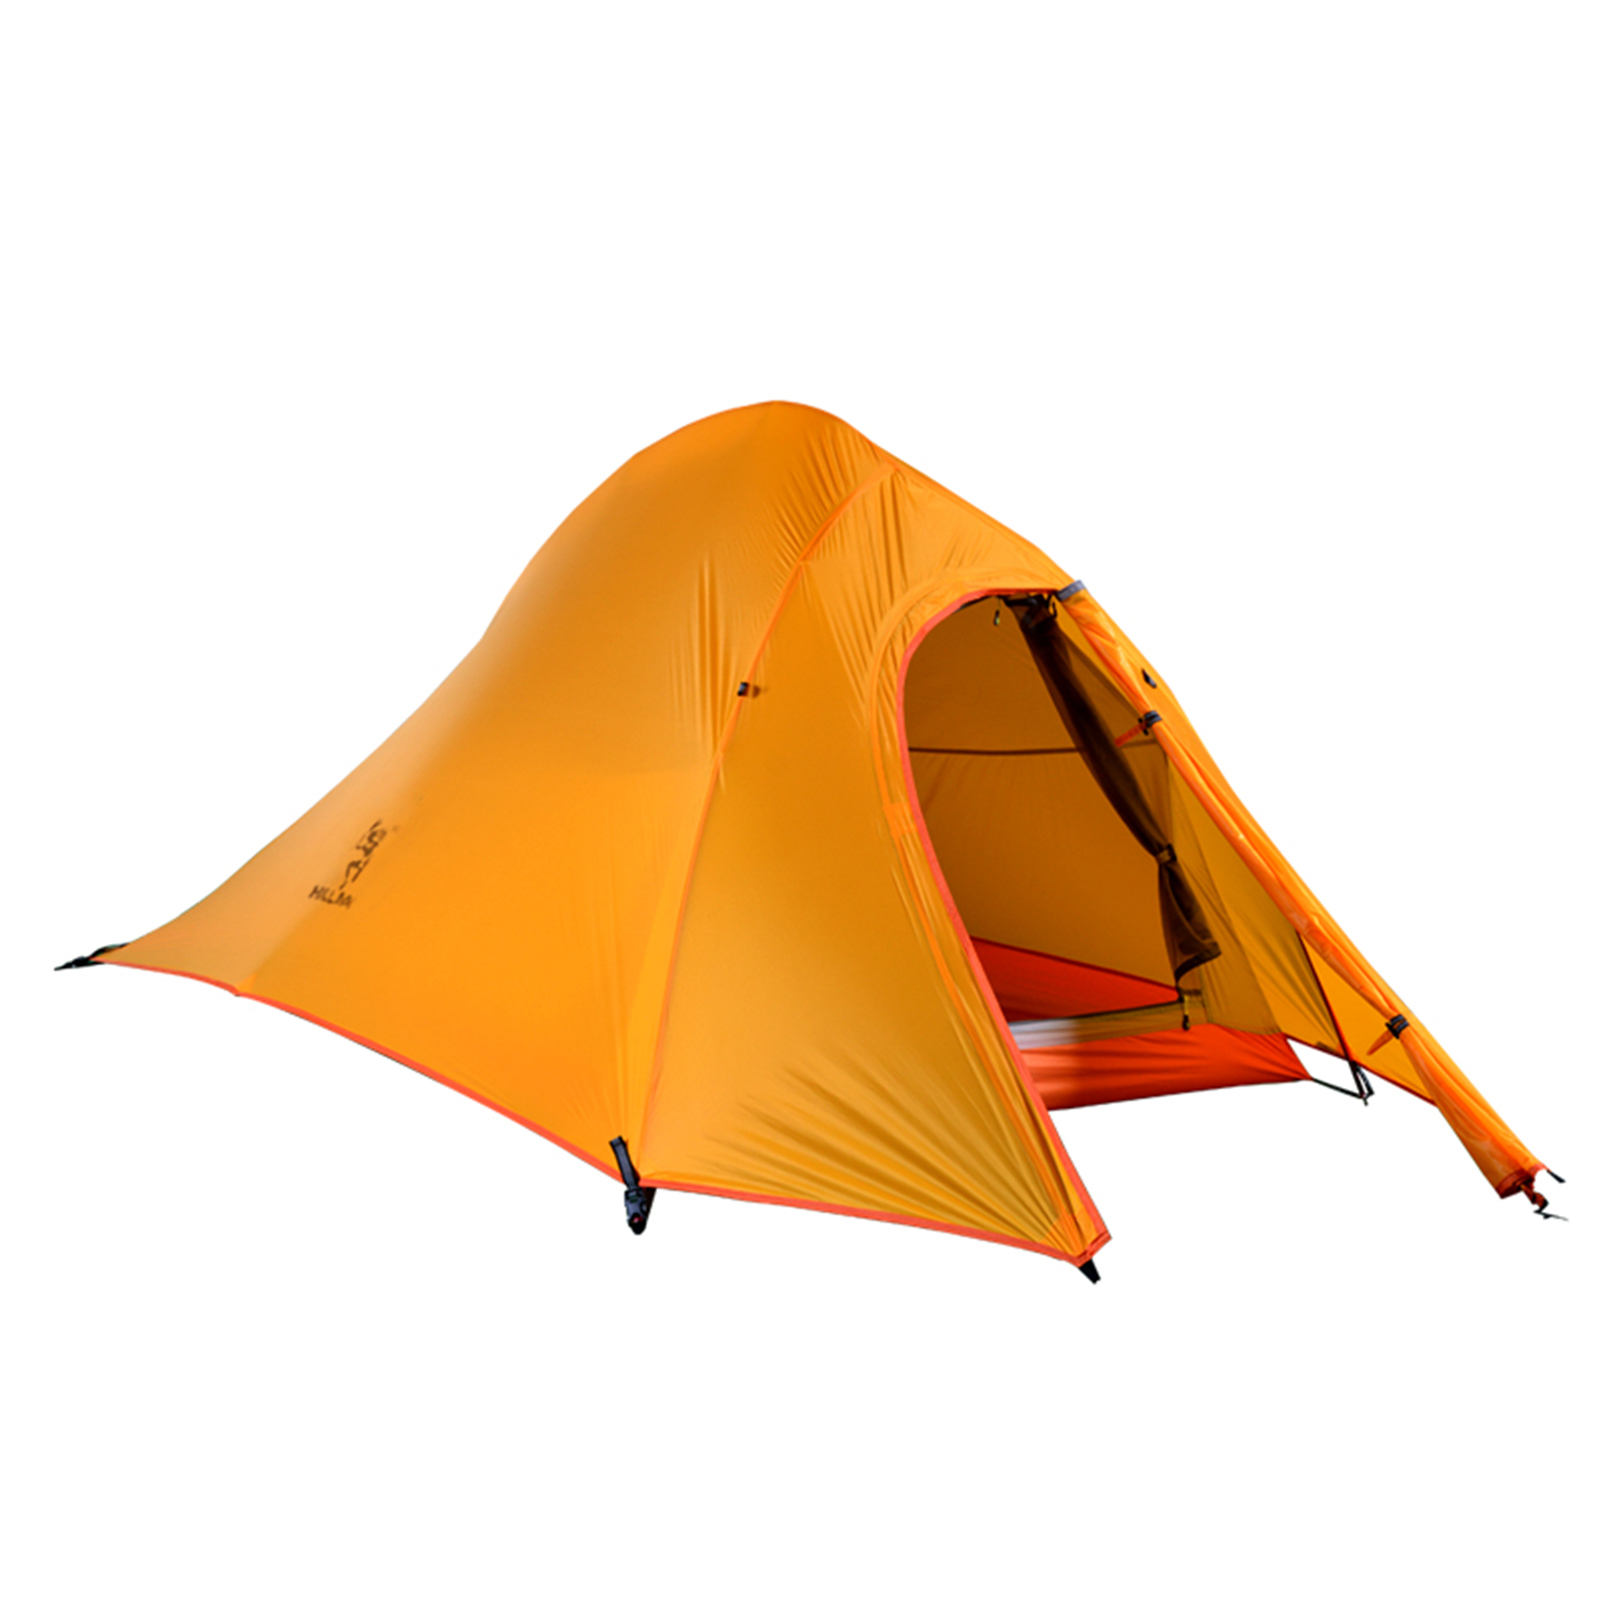 Палатка туристическая непромокаемая. Двухслойная палатка ультралайт. Желтая палатка. Ультралегкая палатка с АЛИЭКСПРЕСС. Туристическая ультралегкая двухслойная.